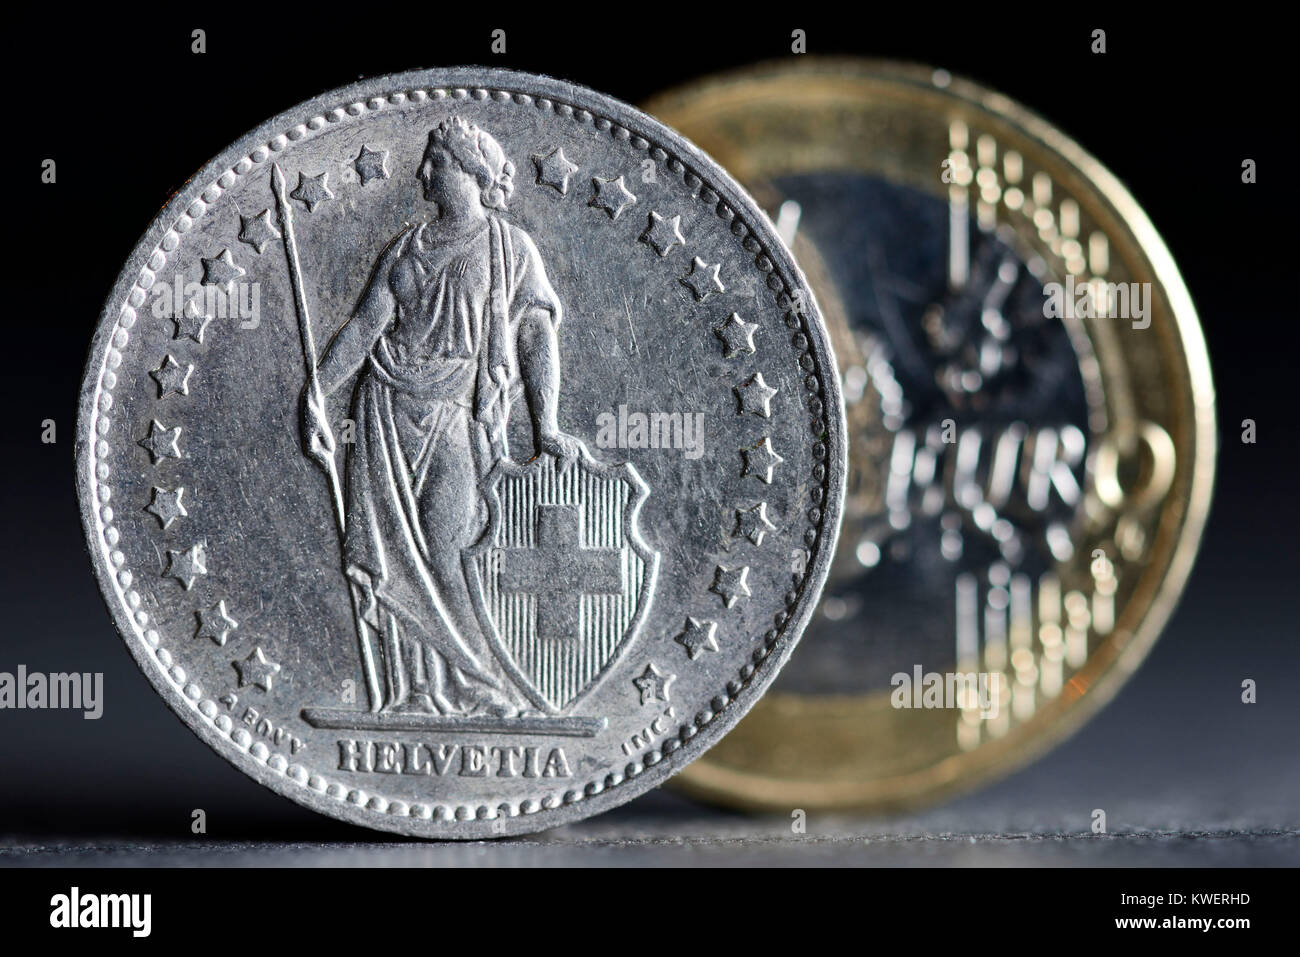 Le franc suisse et l'euro, la fin de la franc-moins, bien entendu, de l'euro, Schweizer Franken und Euro, Beendigung des Franken-Mindestkurses zum Euro Banque D'Images